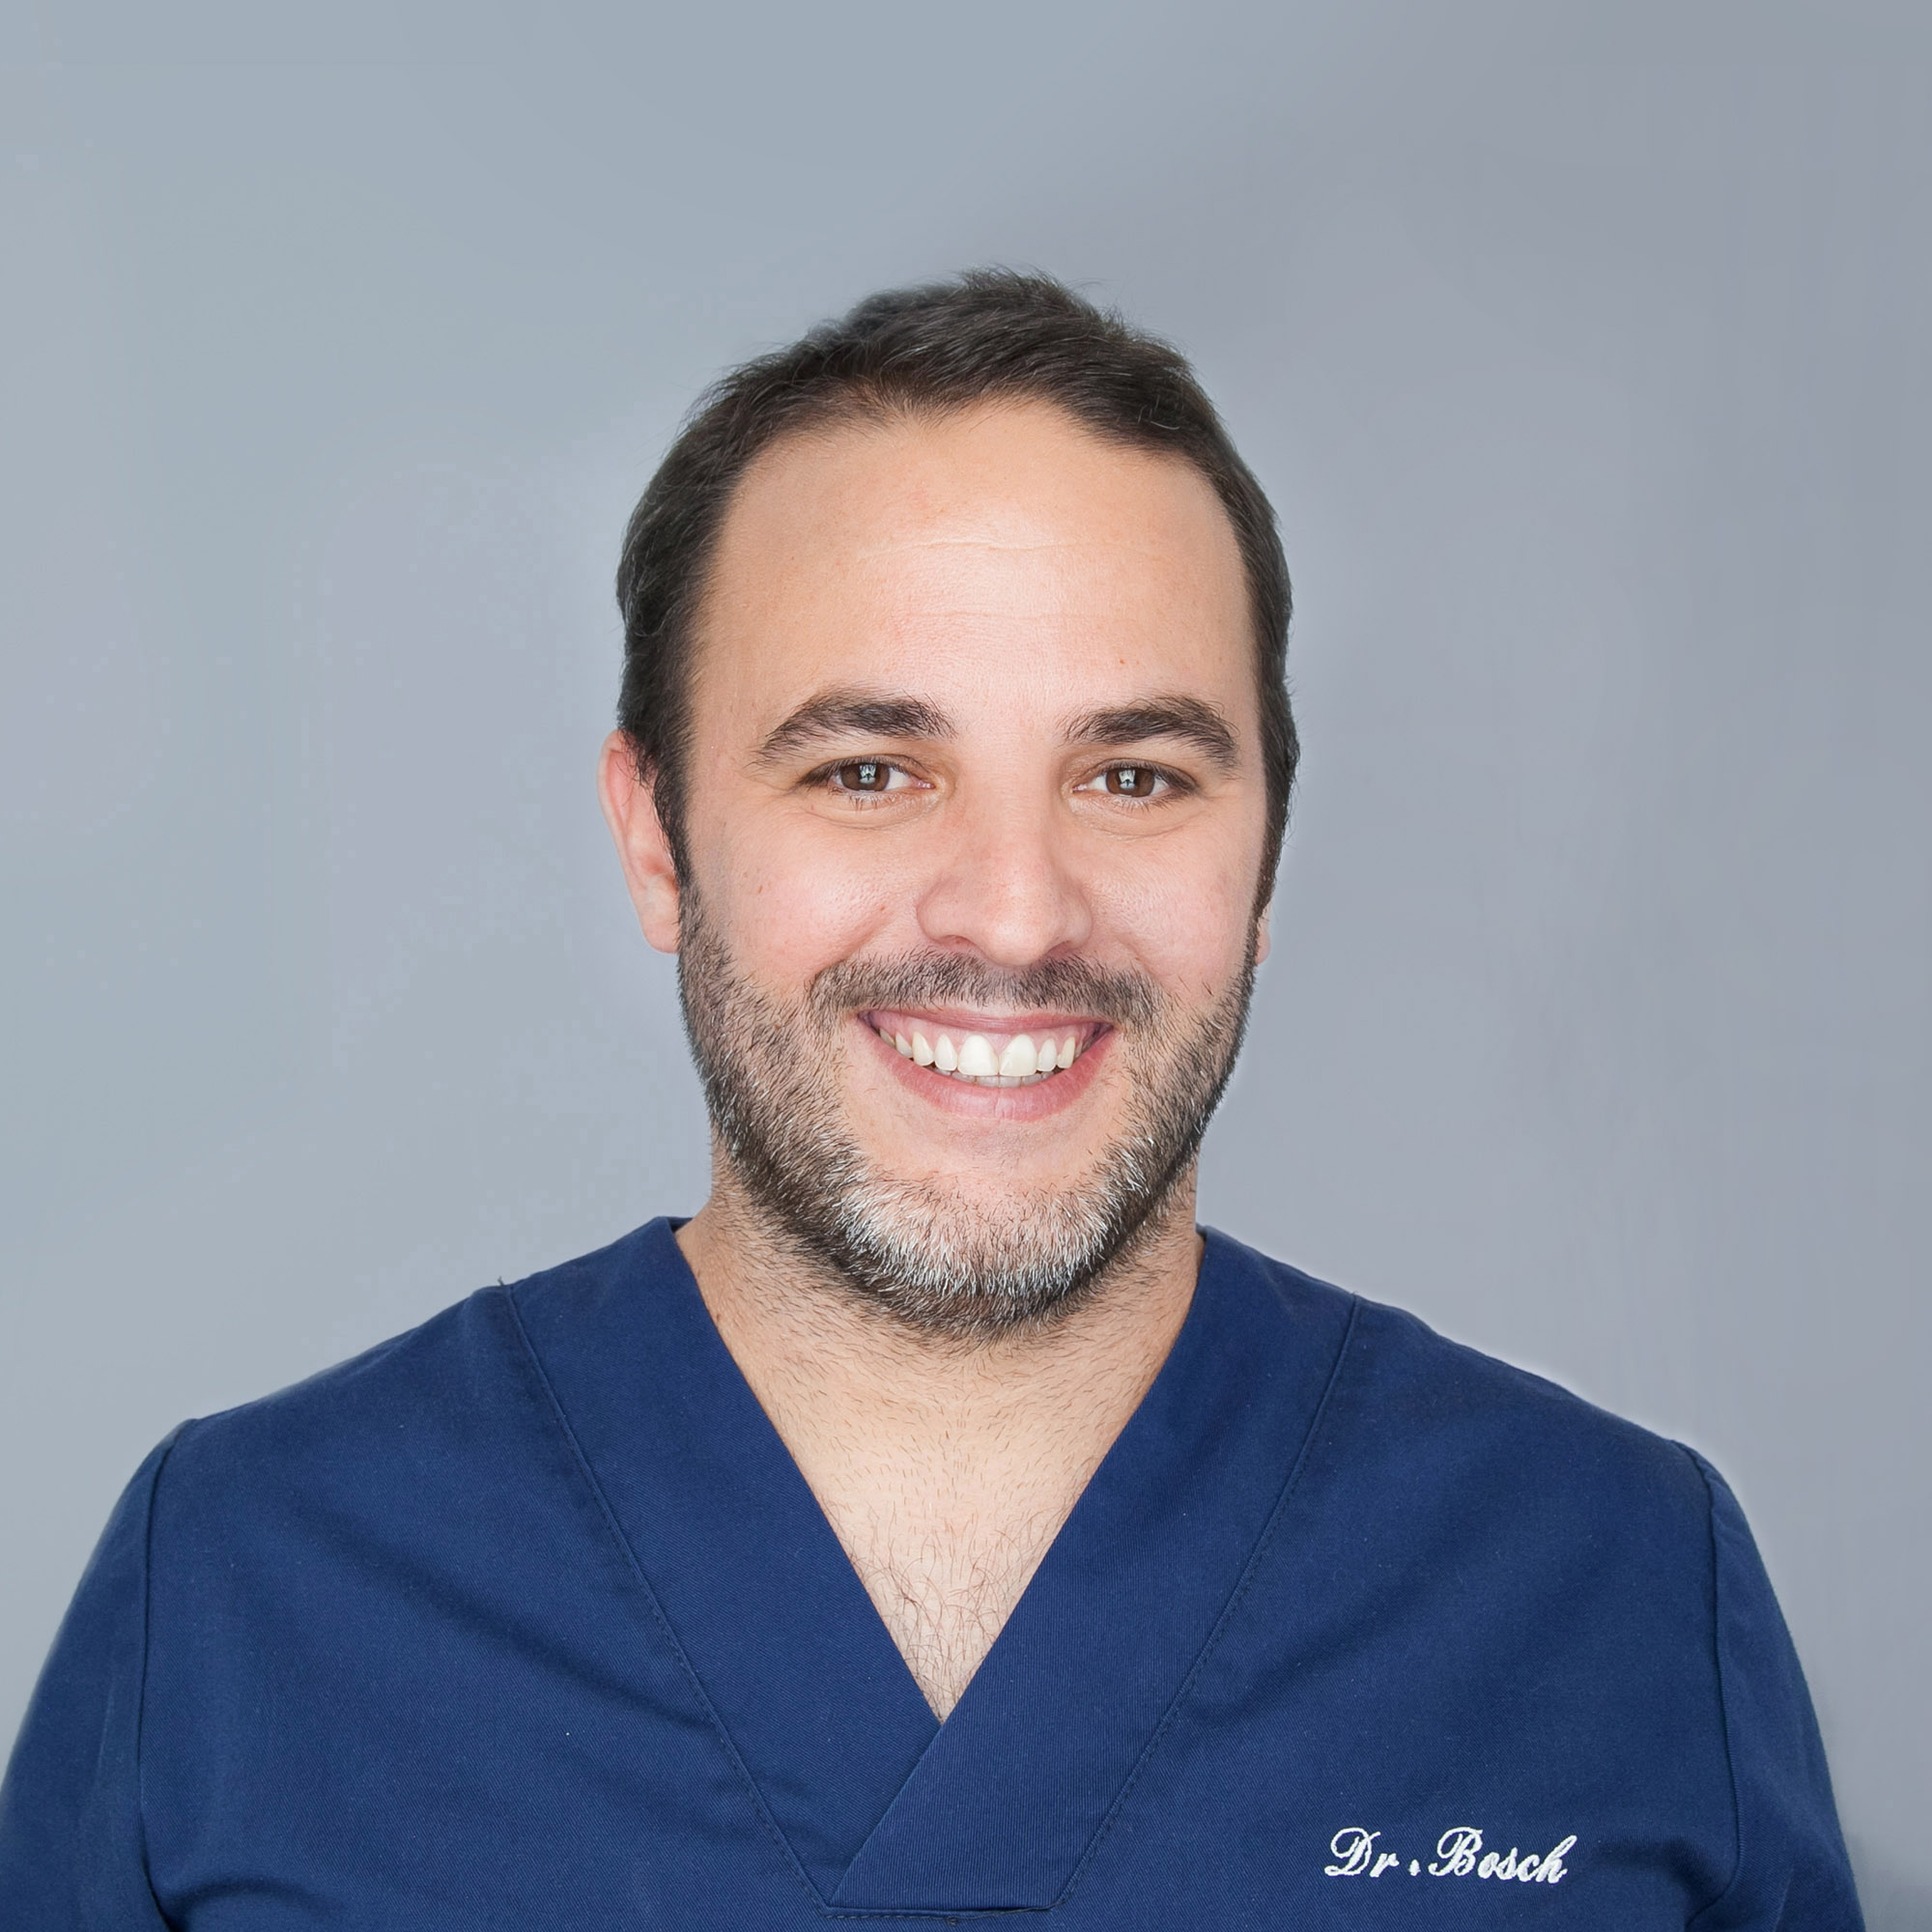 Dr. Bosch Valverde